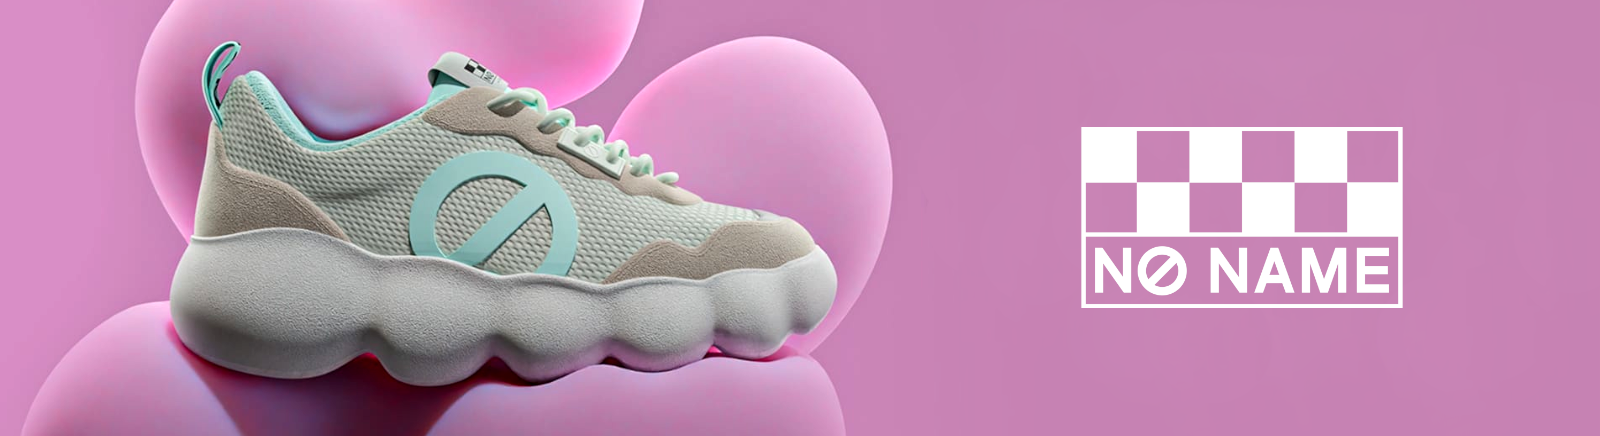 No Name Damenschuhe online kaufen bei Juppen Schuhe